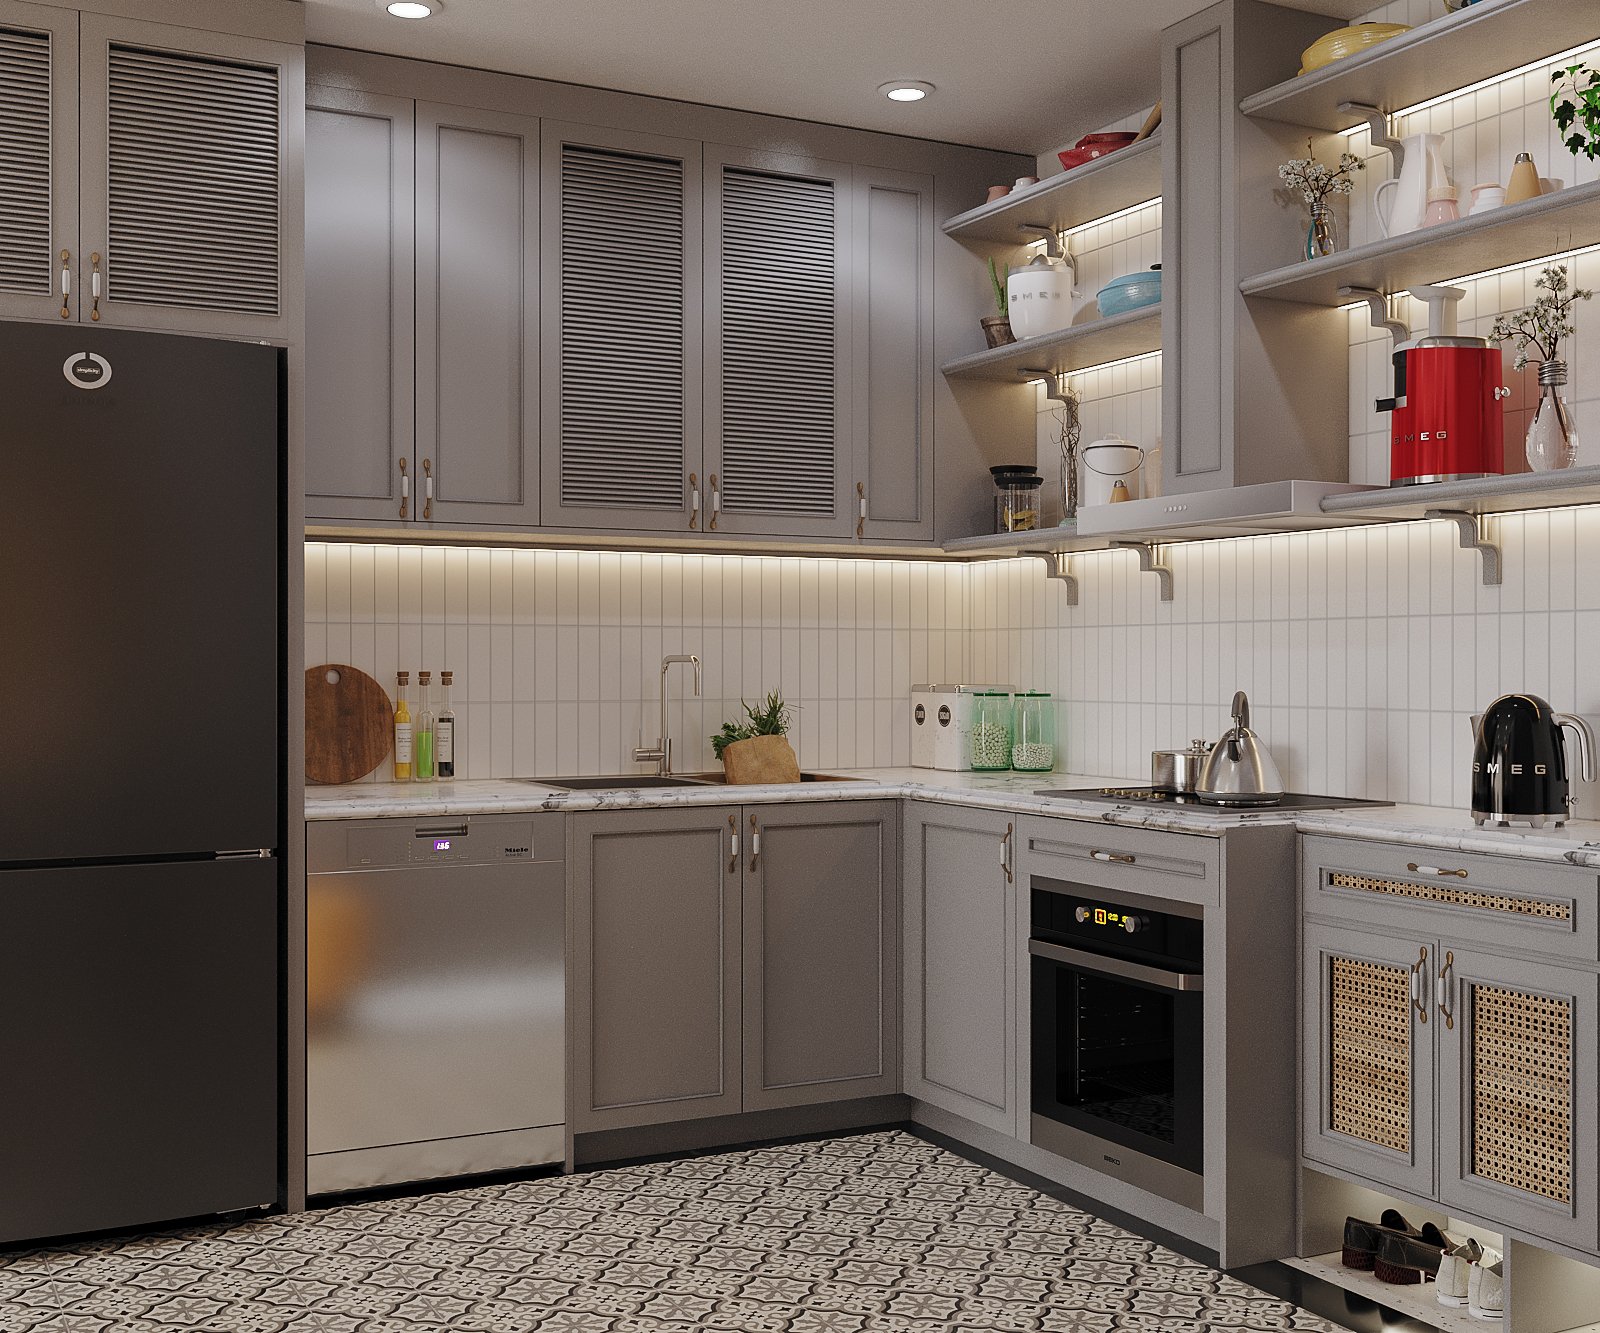 Không gian nấu nướng được thiết kế với đầy đủ tiện ích hiện đại, tủ kệ lưu trữ thoải mái, cực kỳ tiện dụng, phục vụ sở thích làm bánh của nữ chủ nhân.